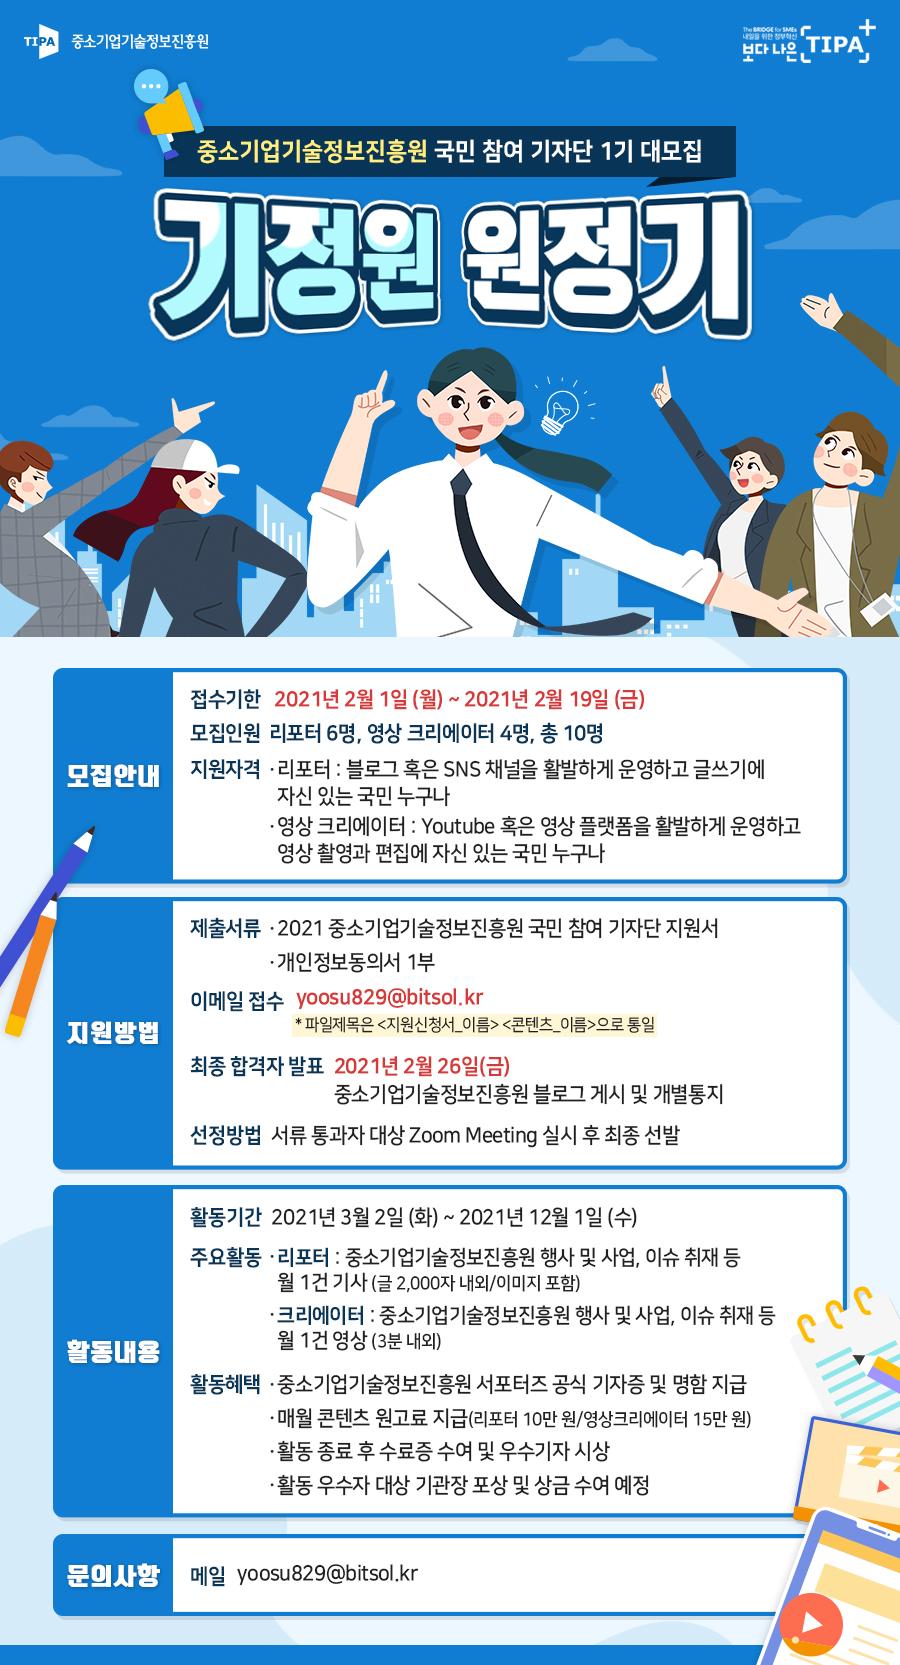 중소기업기술정보진흥원 국민 참여 기자단 1기 대모집